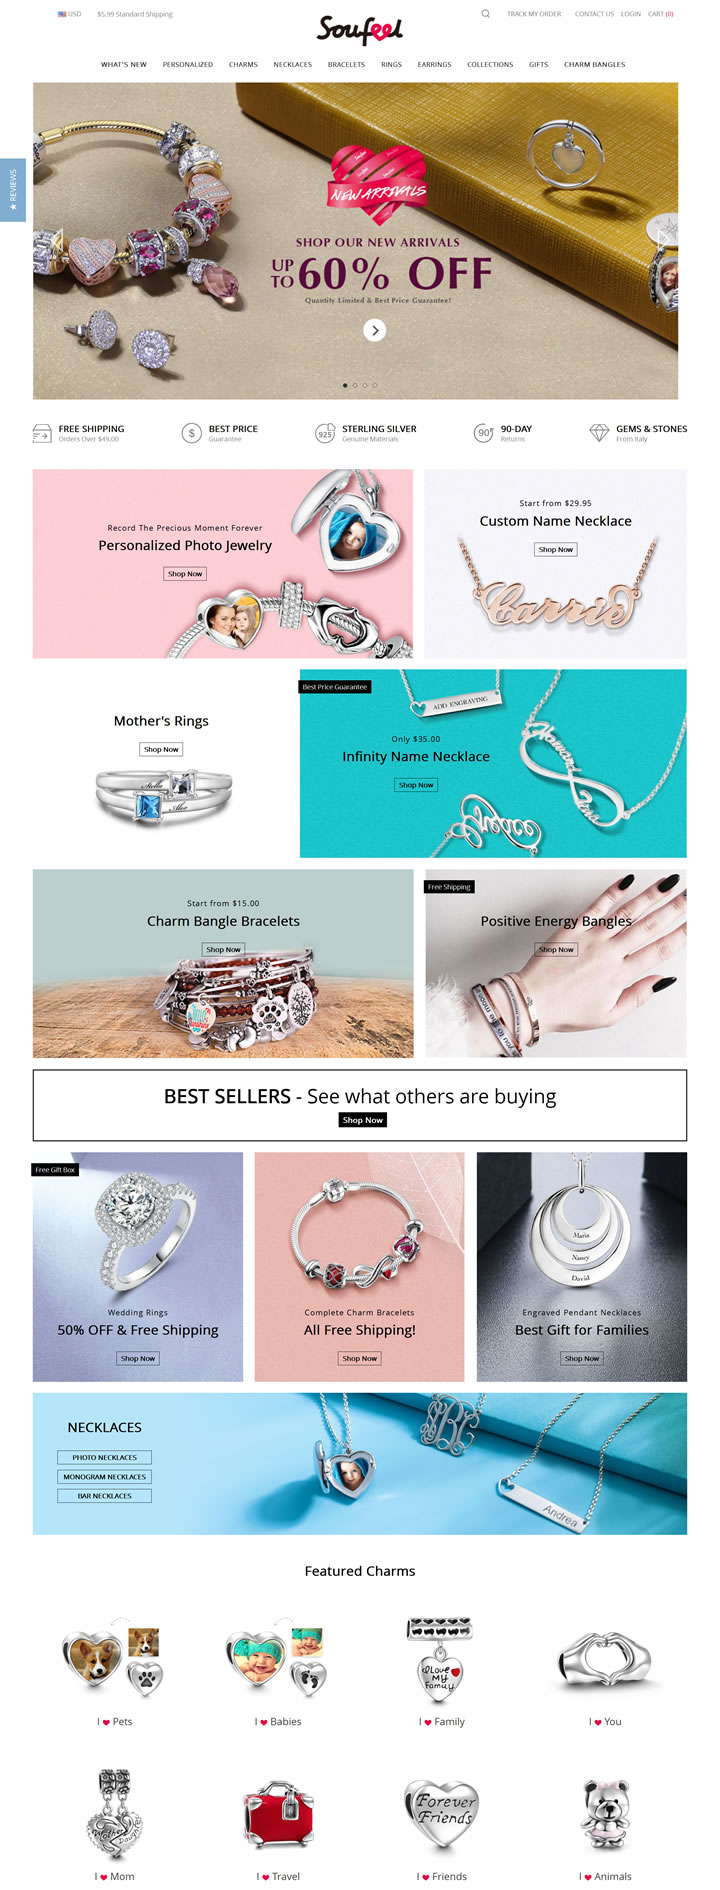 索菲尔珠宝国际官方网站：Soufeel Jewelry